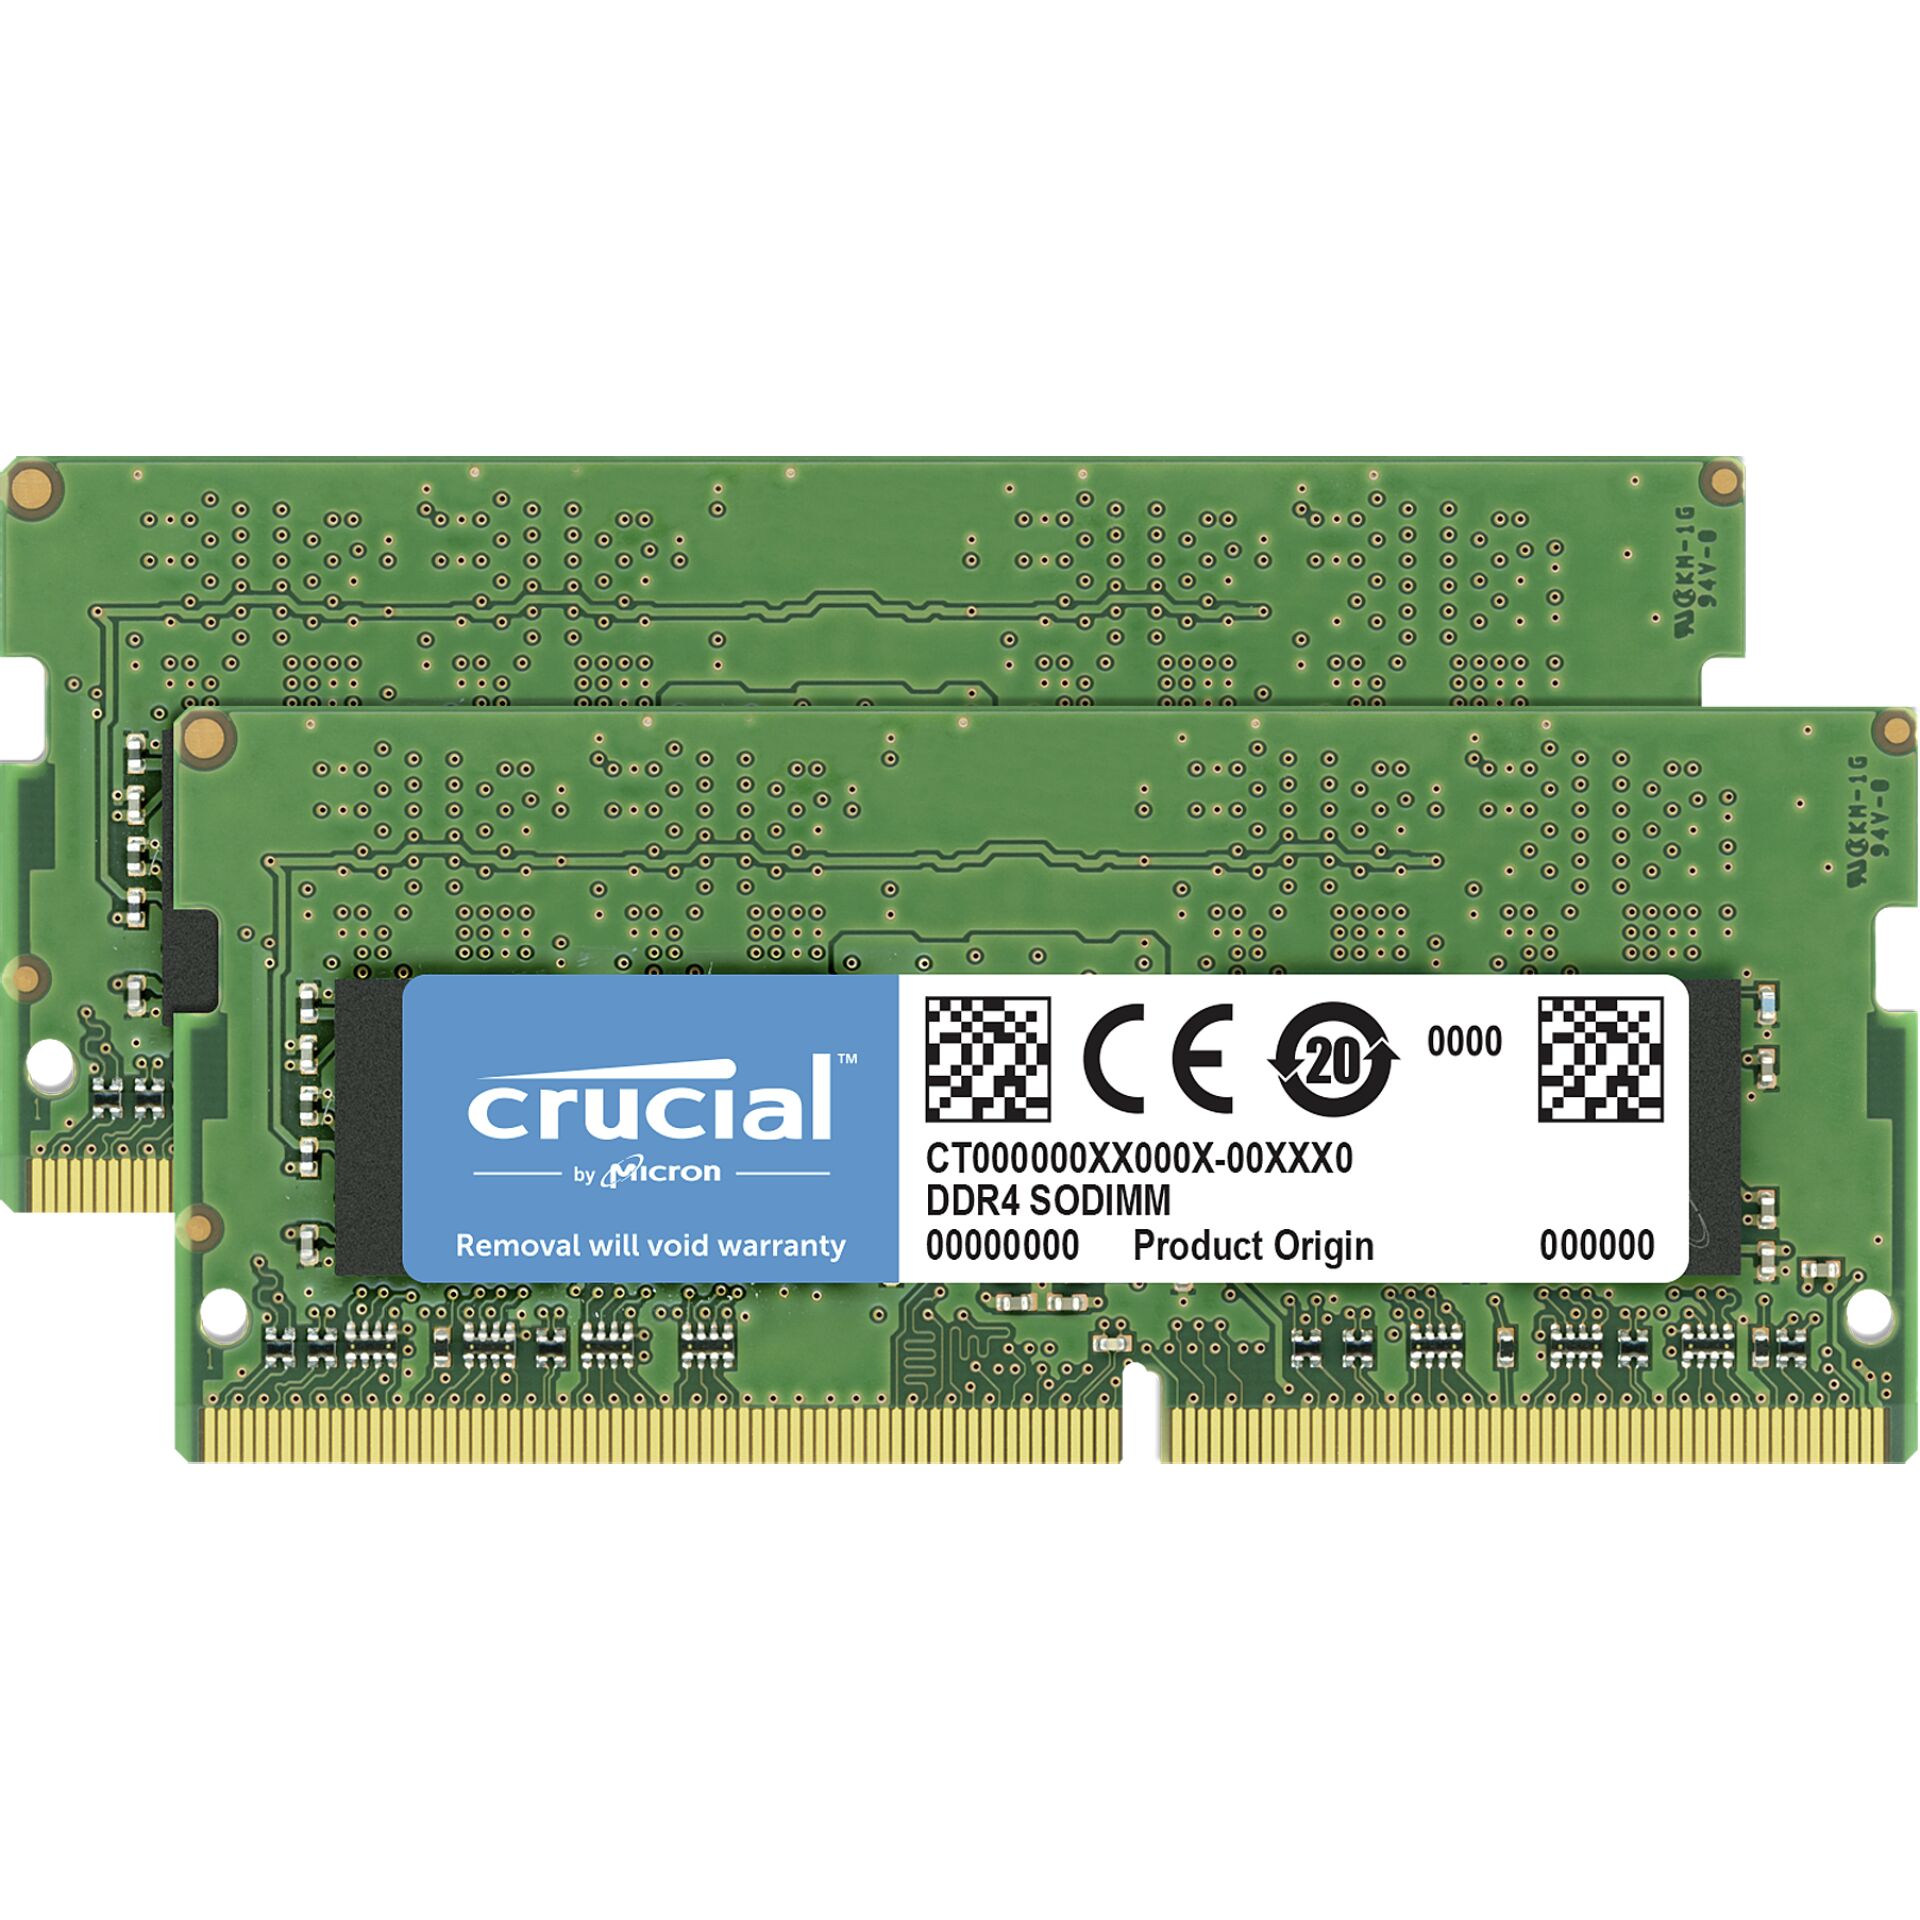 DDR4RAM 2x 8GB DDR4-3200 Crucial SO-DIMM, CL22-22-22 Kit 